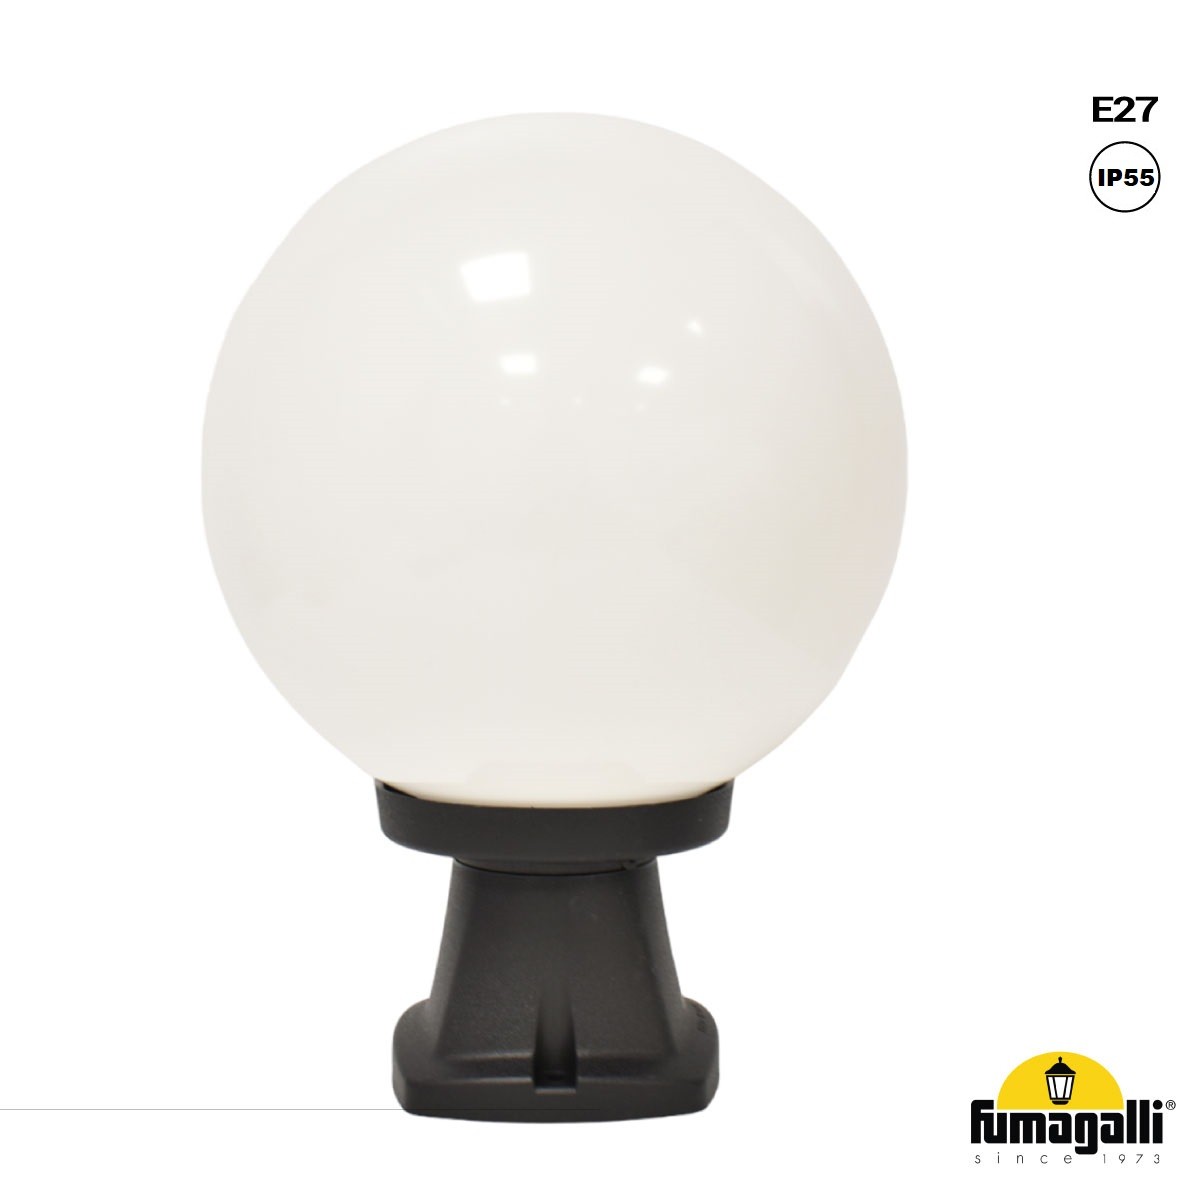 FUMAGALLI "Disma/G250" candeeiro de chão exterior de esfera opala "Disma/G250" - E27